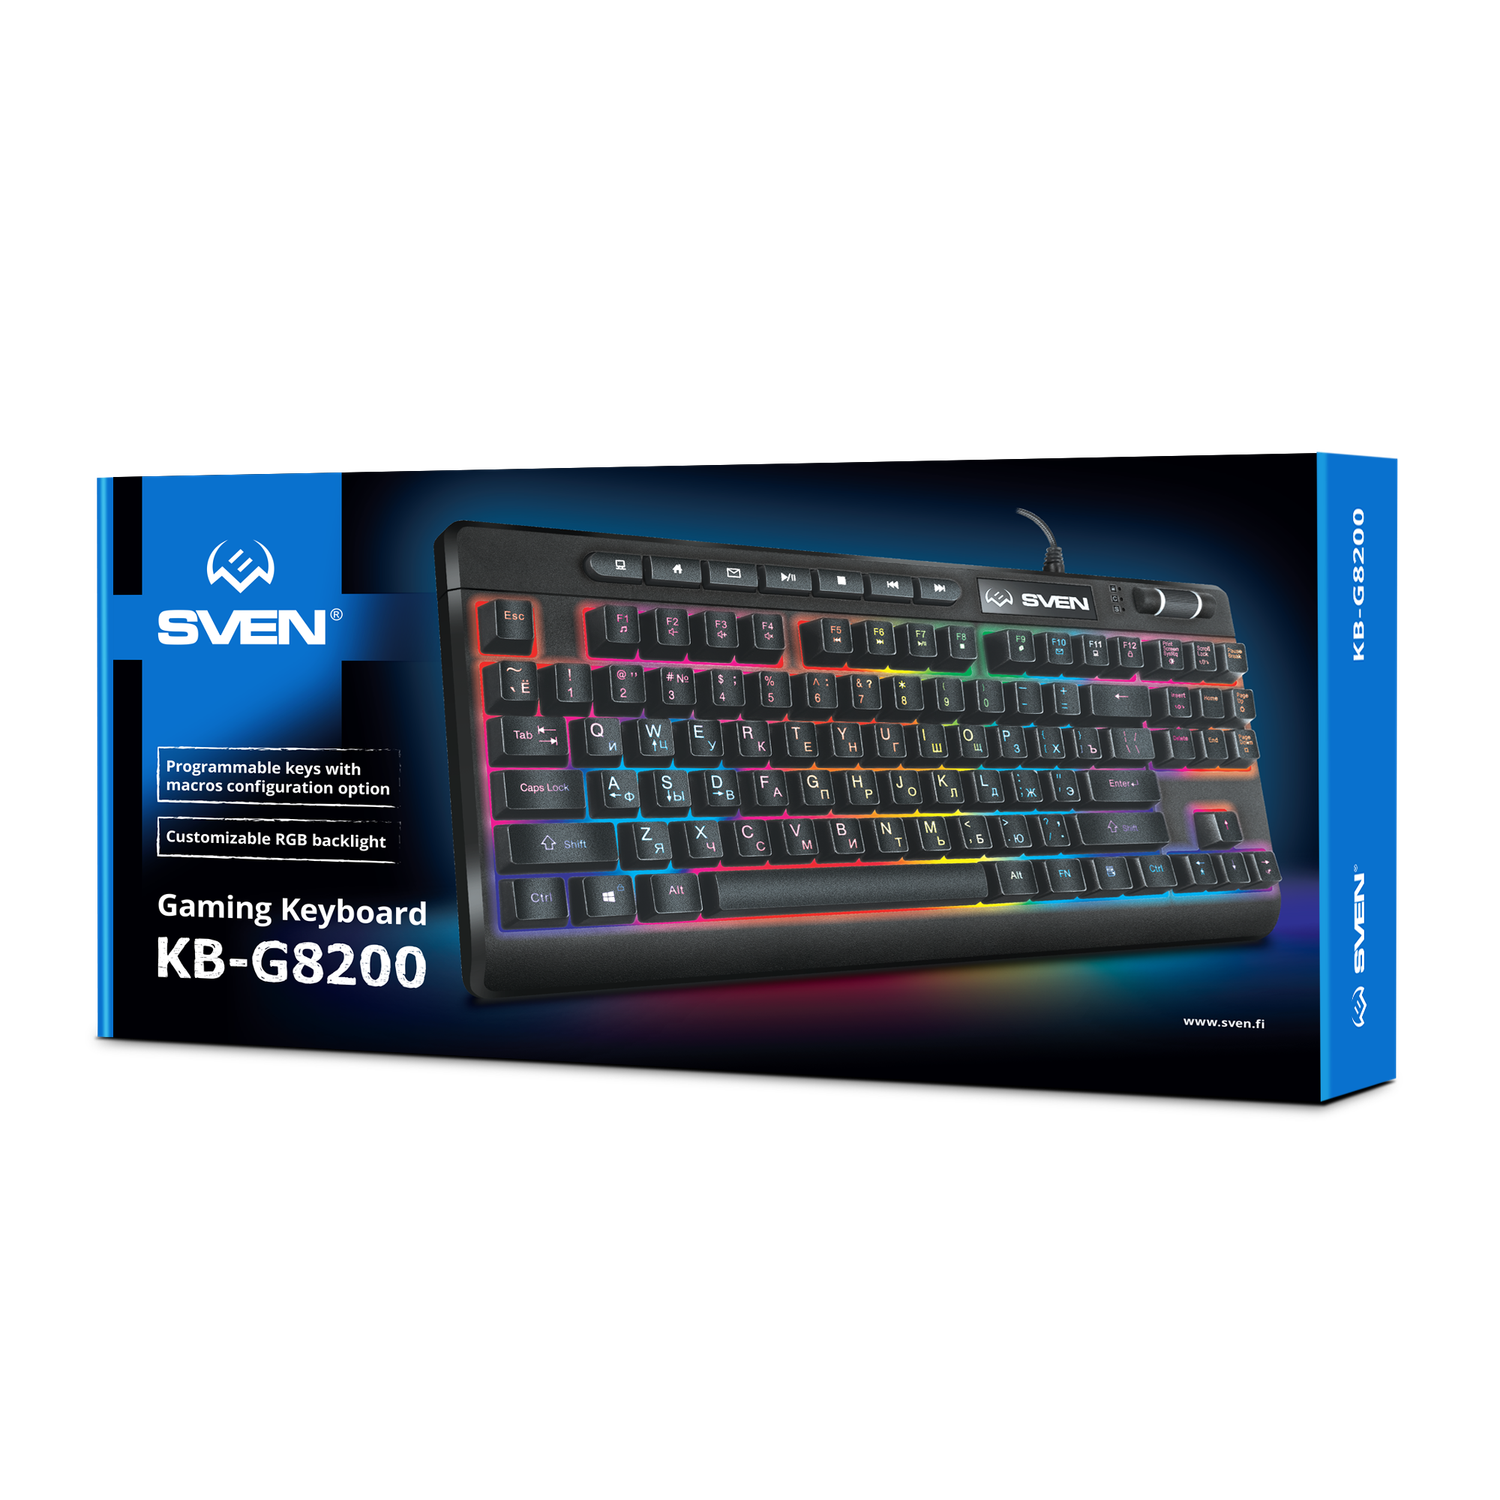 Игровая клавиатура SVEN kb-g8200 с RGB-подсветкой - фото 1